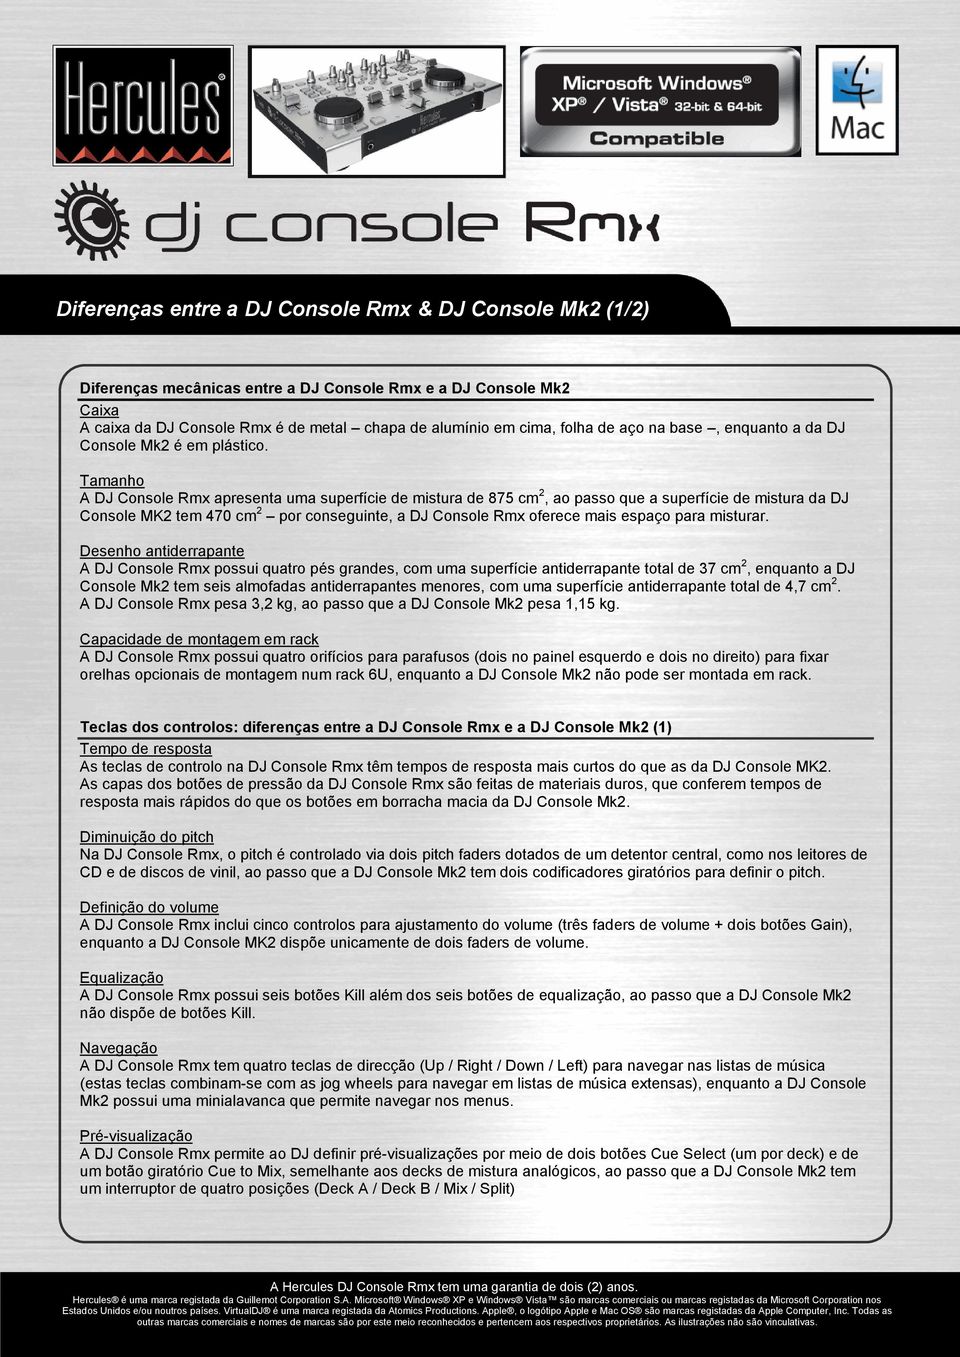 Tamanho A DJ Console Rmx apresenta uma superfície de mistura de 875 cm 2, ao passo que a superfície de mistura da DJ Console MK2 tem 470 cm 2 por conseguinte, a DJ Console Rmx oferece mais espaço